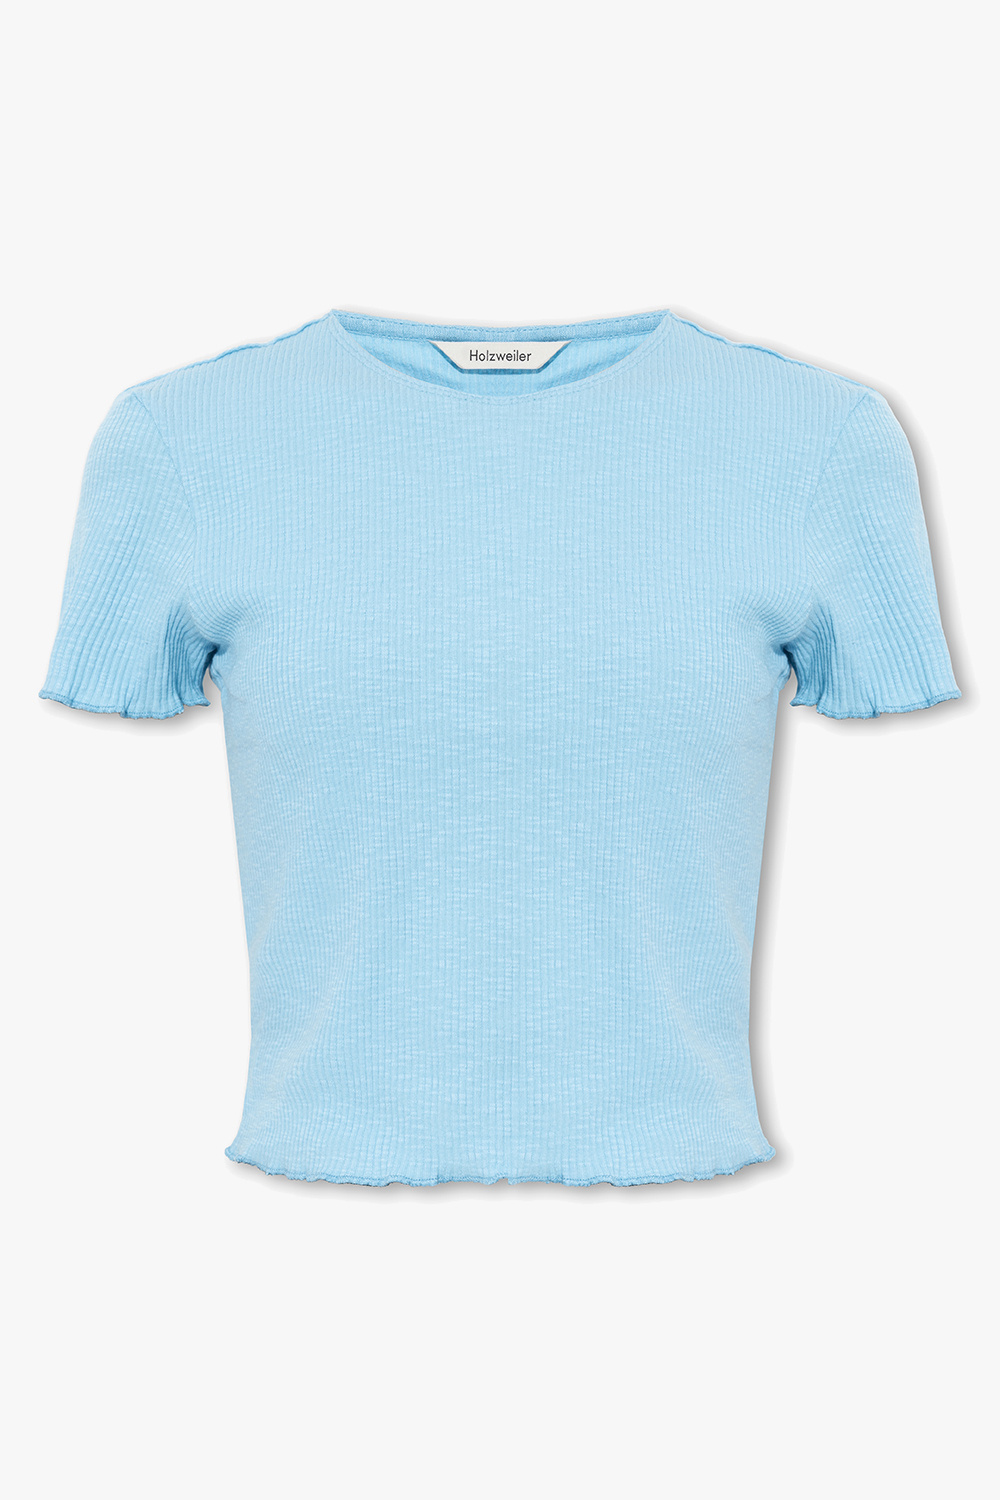 Extension-fmedShops Canada - Light blue cropped - Holzweiler ab tie-dye Blau Wear SS T T-shirt - 102 \'Lego® shirt Sort b 12010477